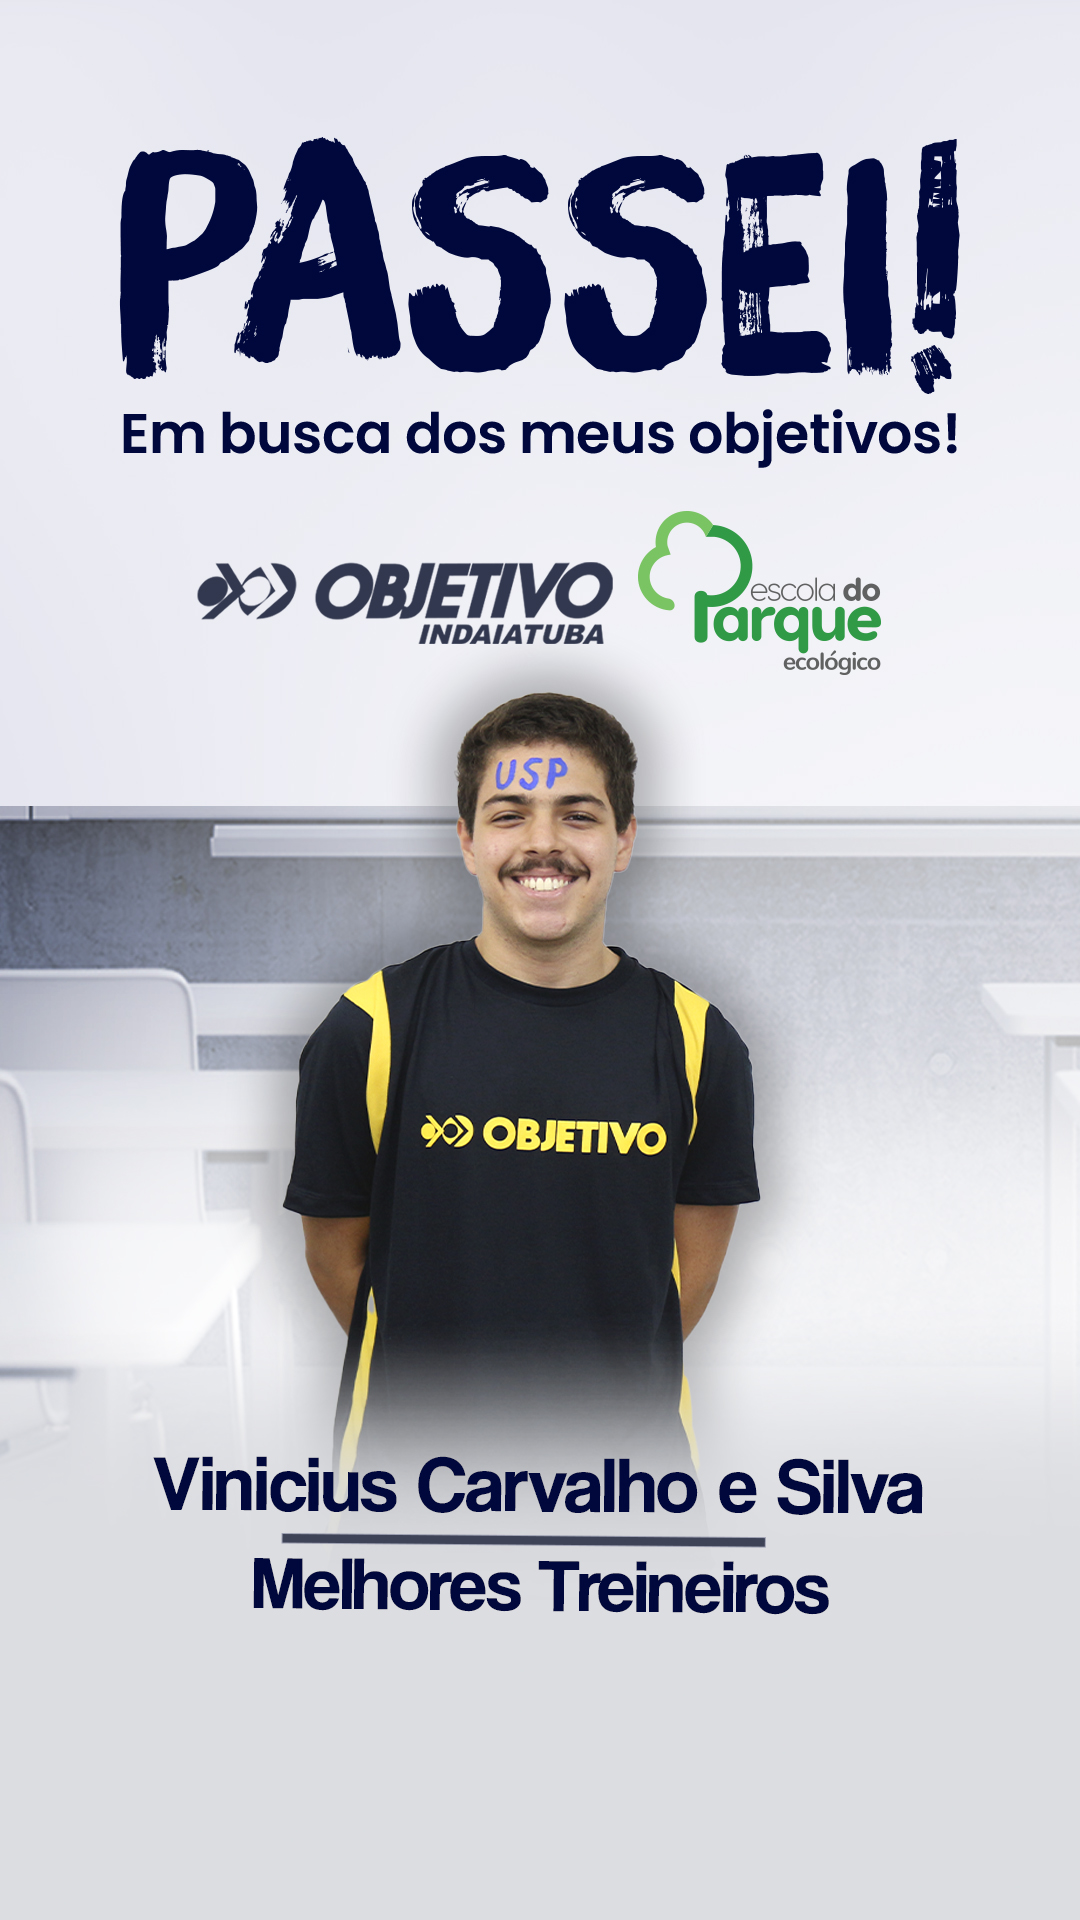 Vinicius Carvalho e Silva